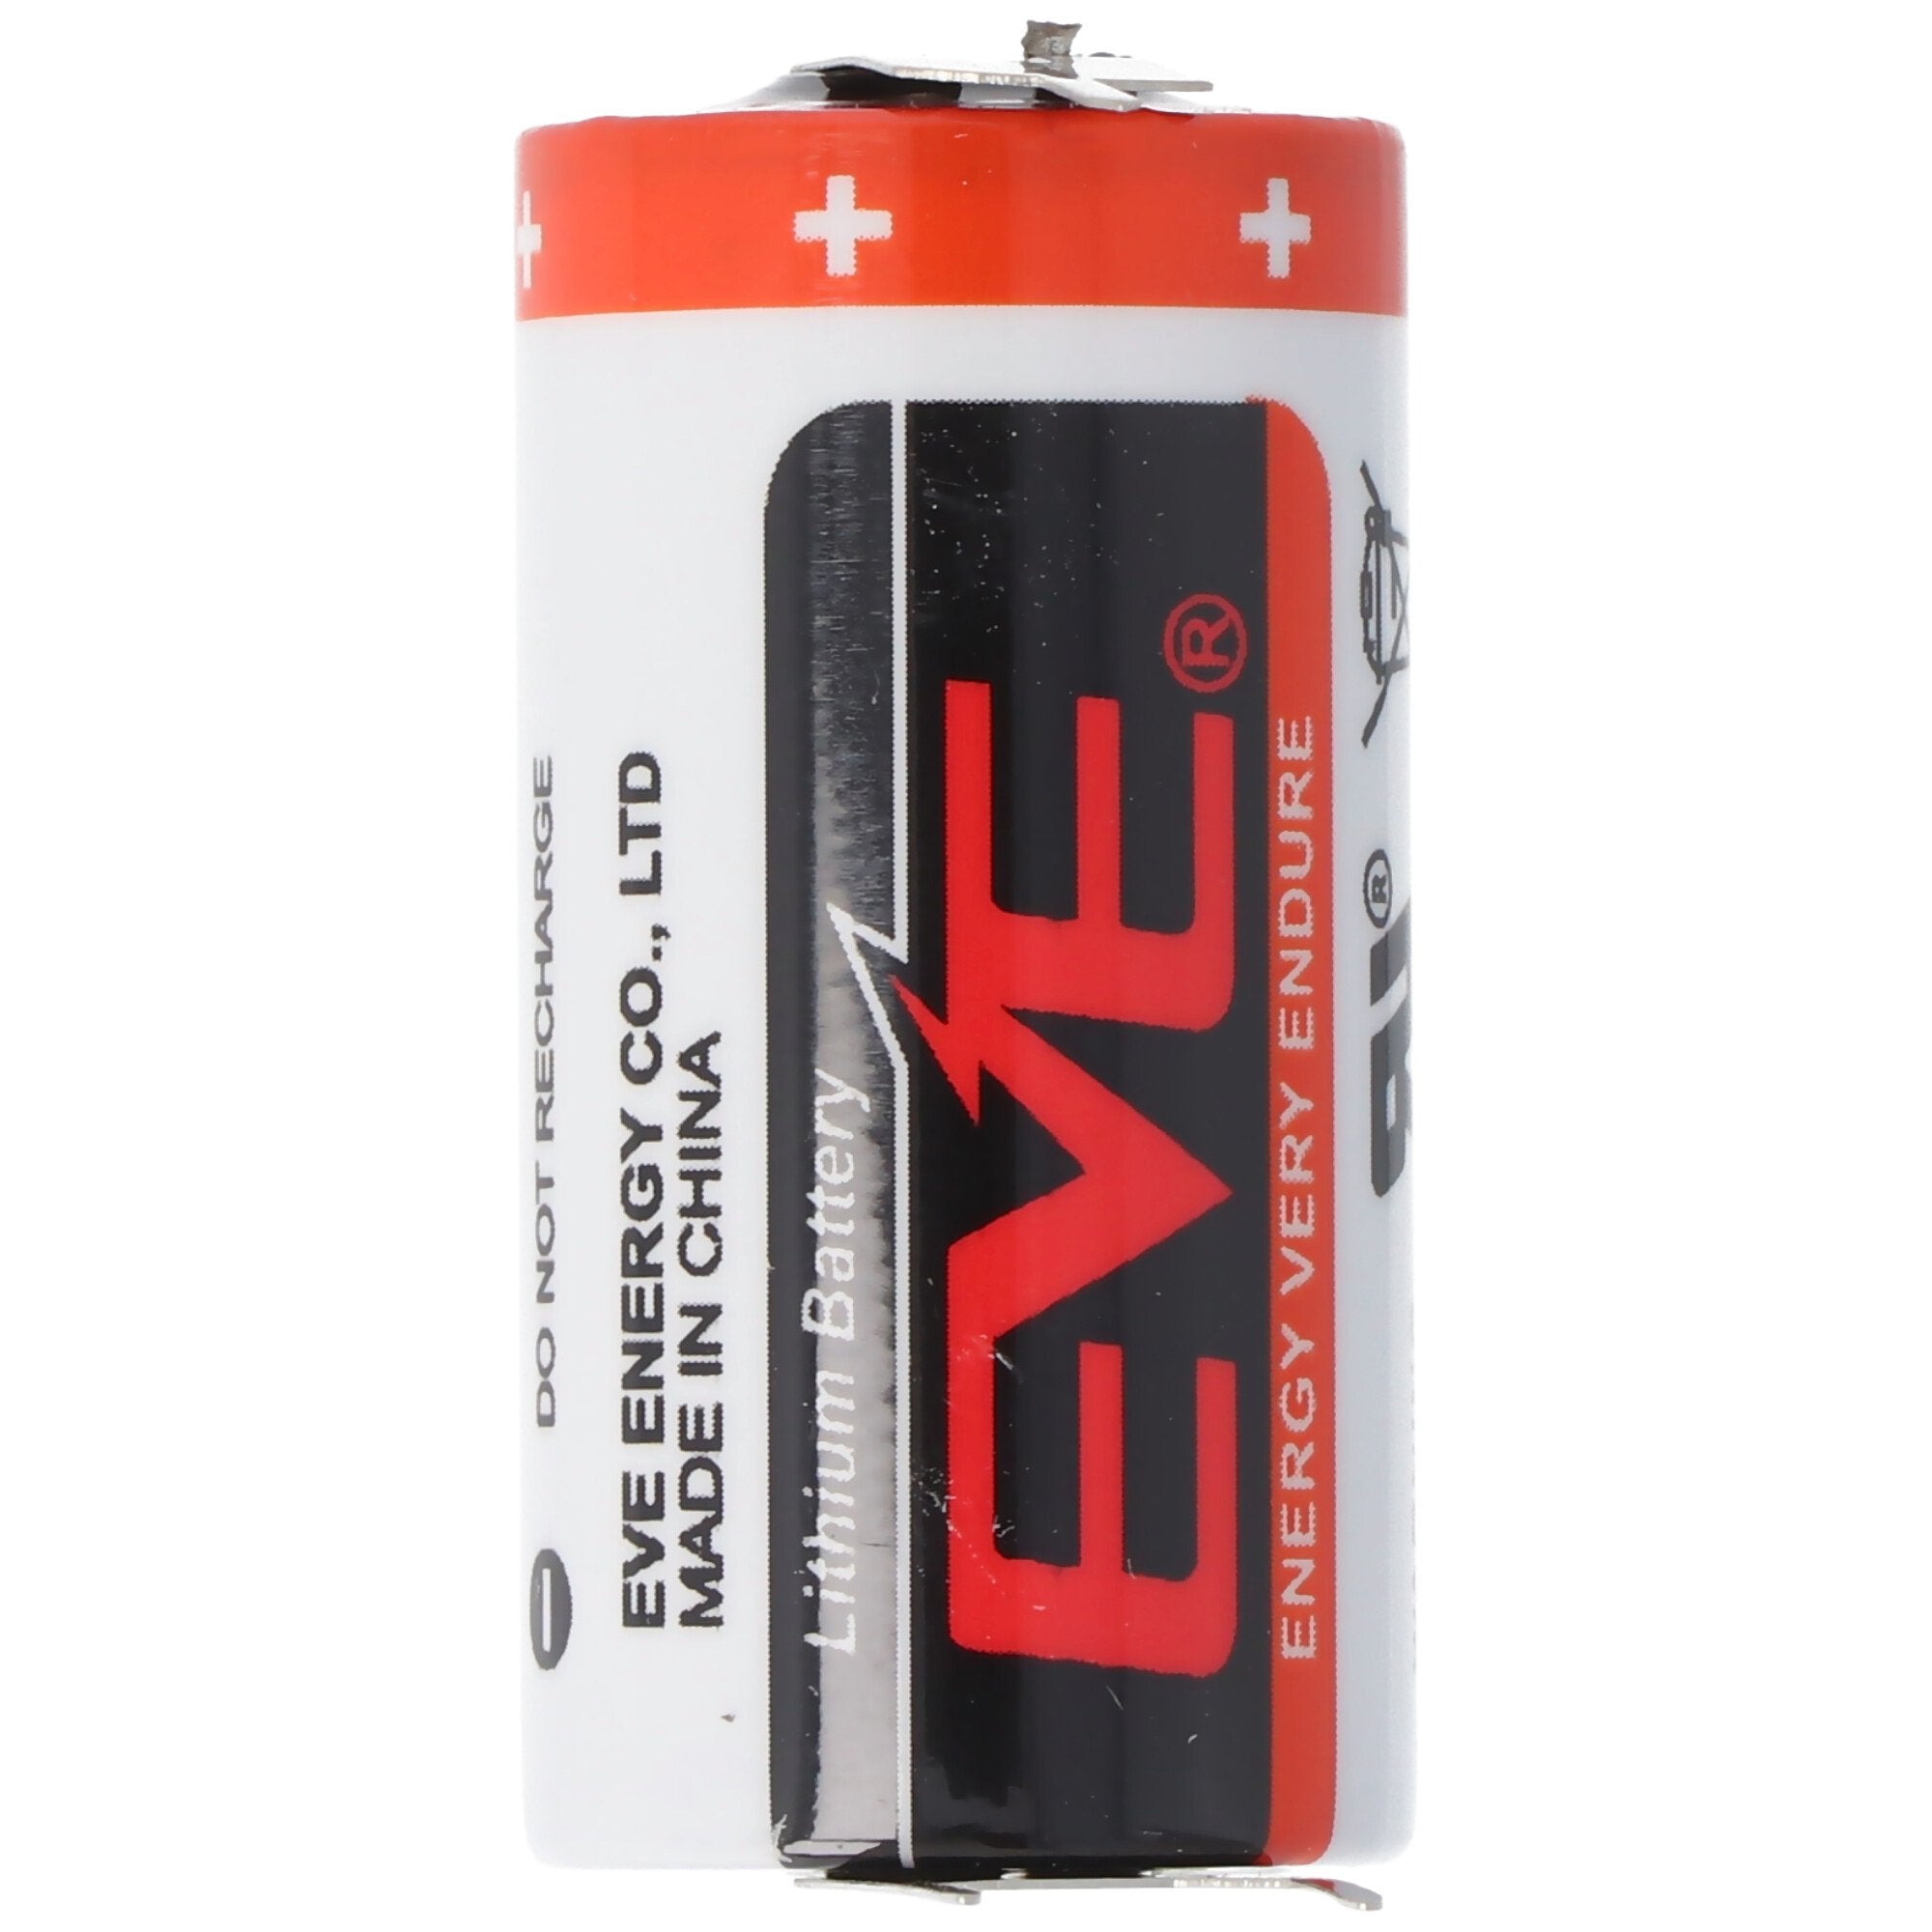 EVE CR17335 batterij maat 2 / 3A met 3 volt spanning en 1550 mAh capaciteit, afmetingen 33,5 x 17 mm